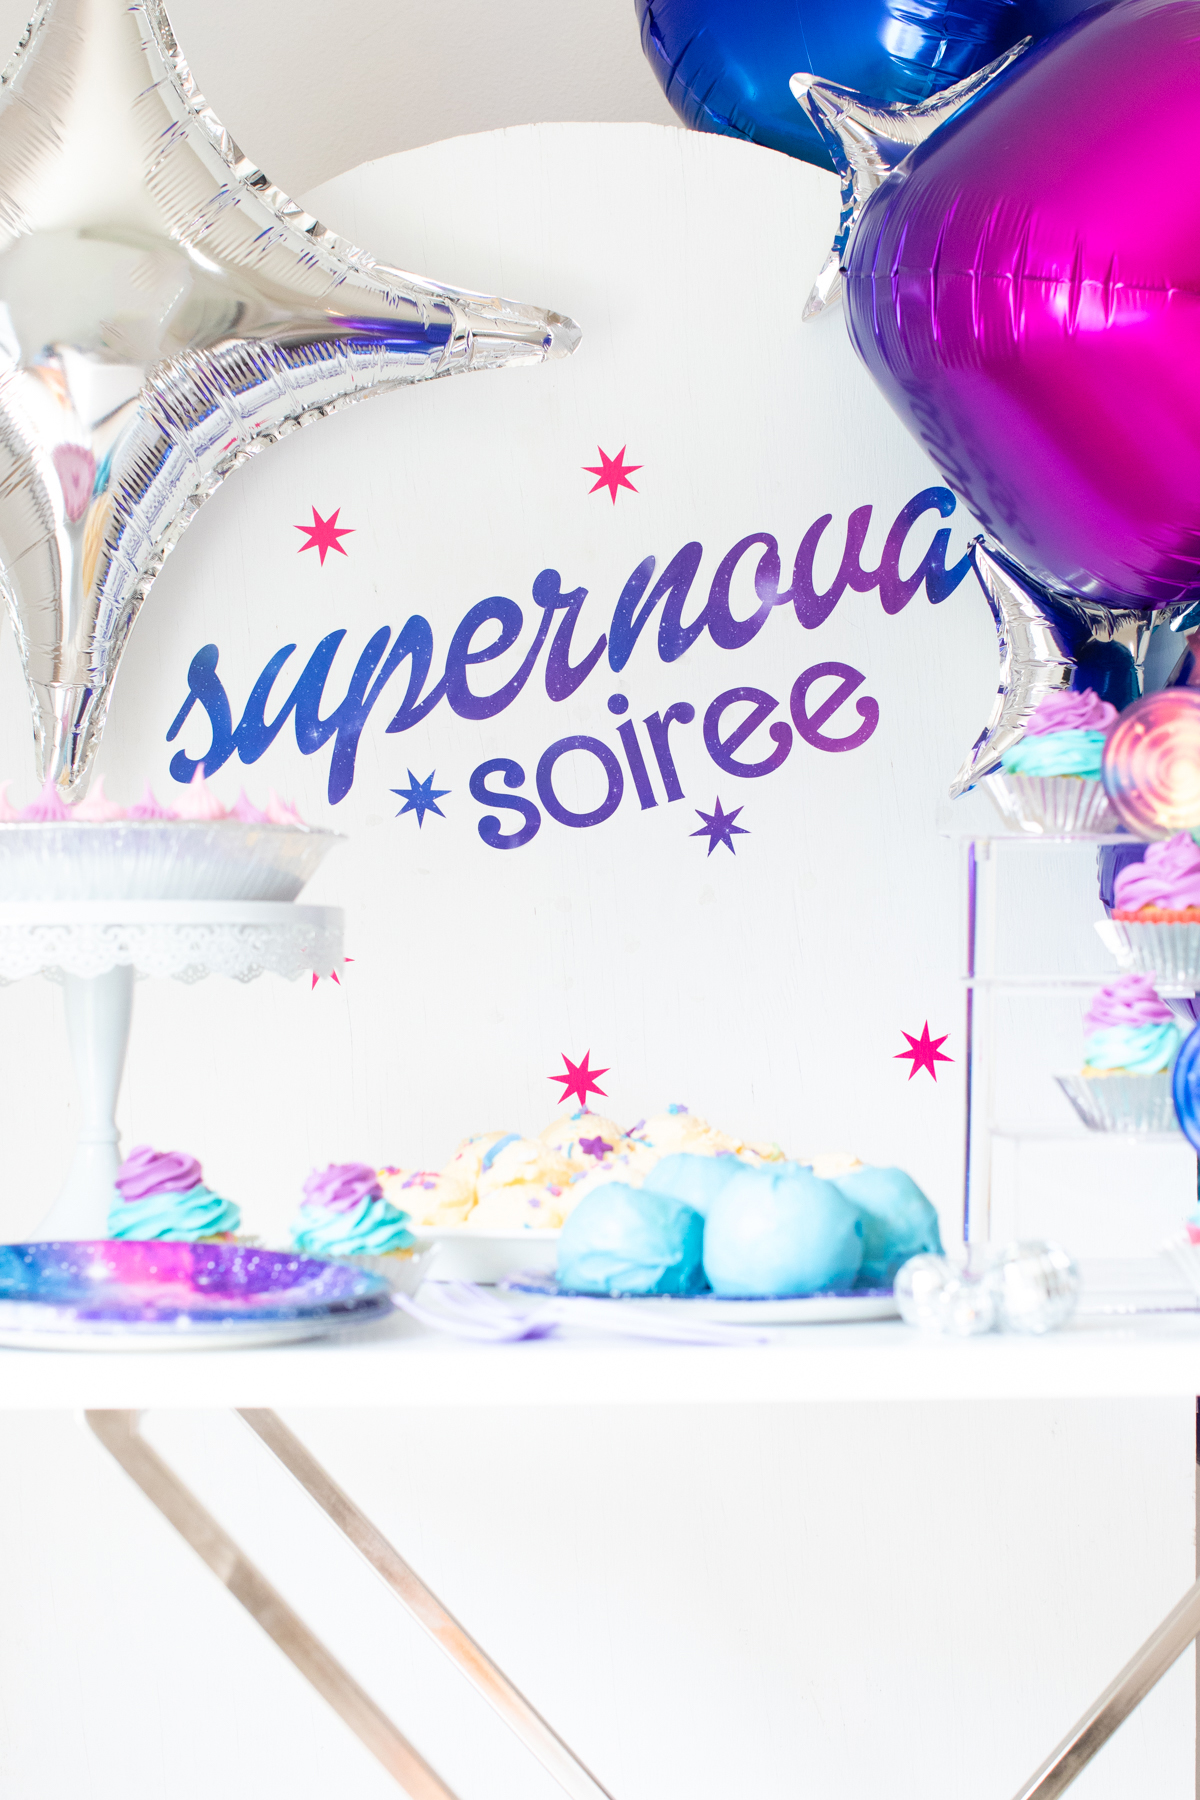 supernova soiree party backdrop to celebrate star trek prodigy, season one, episodes 11-20.